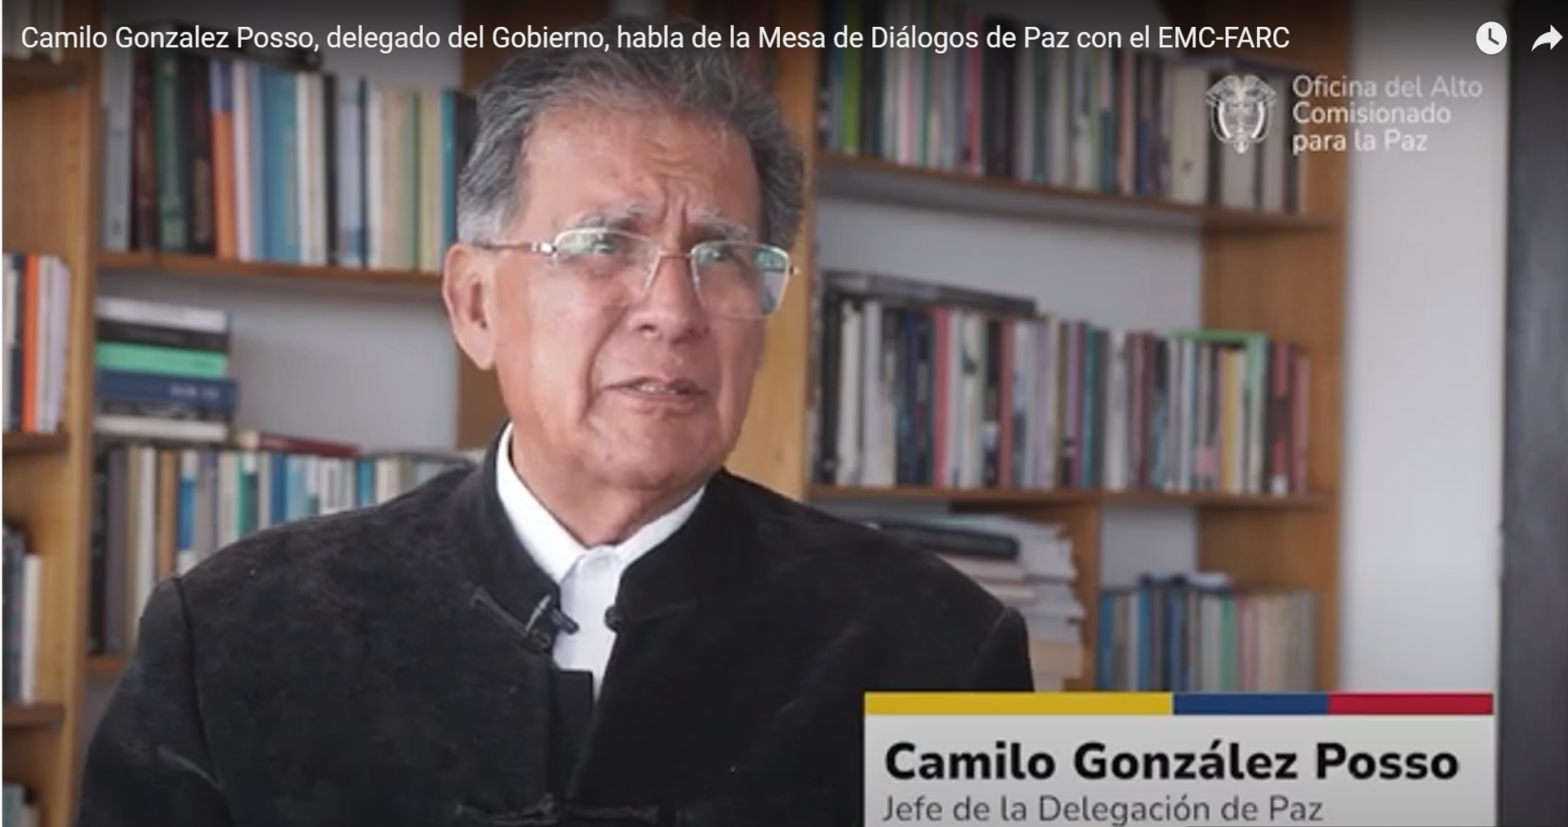 Entrevista a Camilo González Posso. Coordinador del grupo de negociadores designados por el gobierno a la mesa con el EMC – Farc.